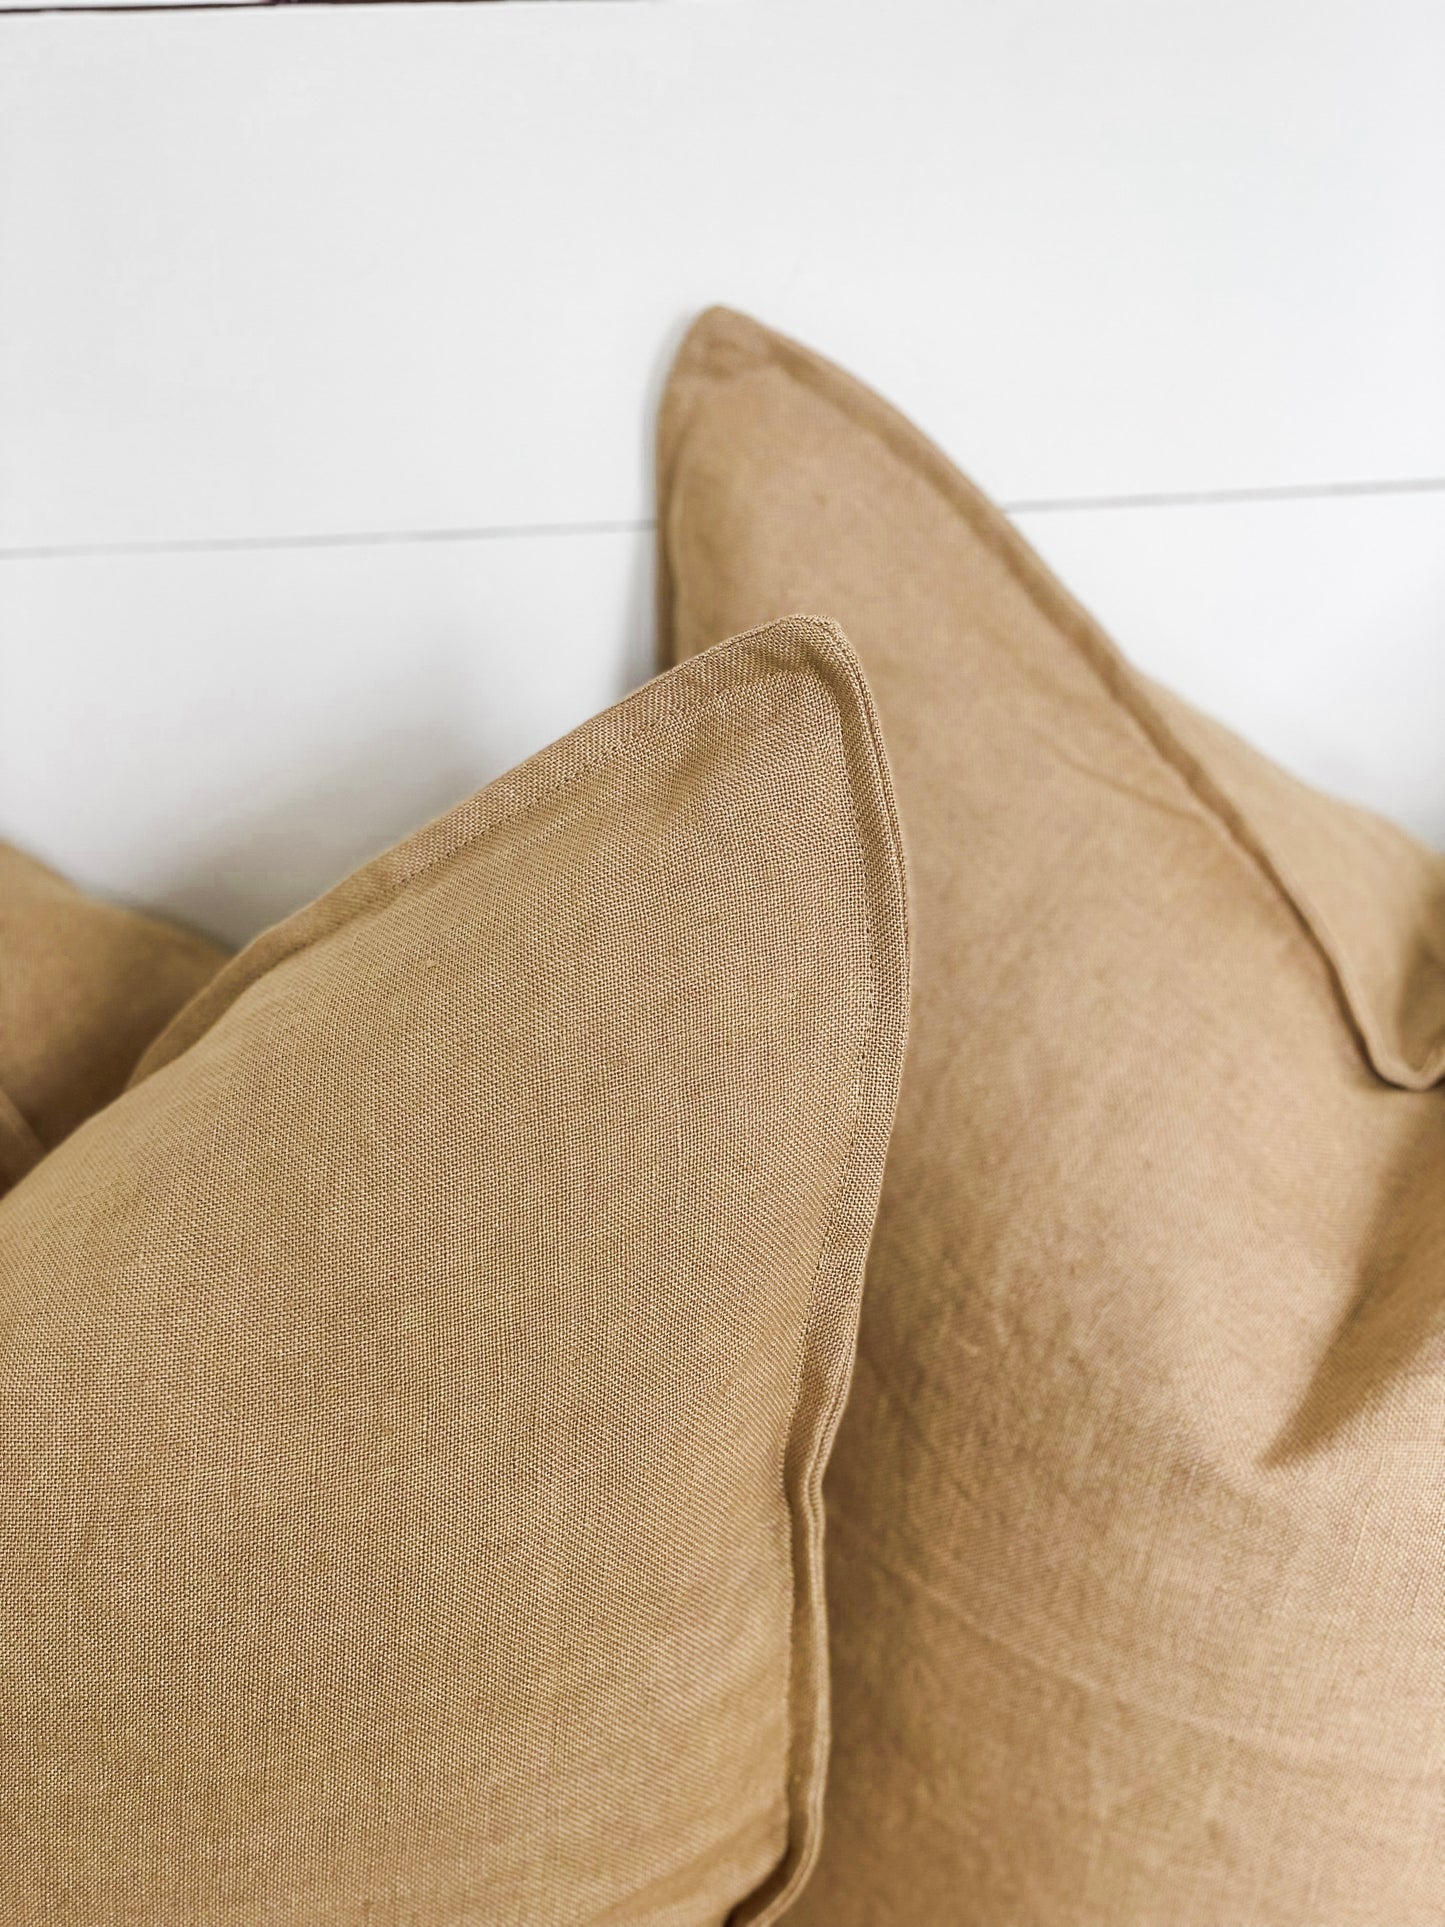 Cushion Cover - Ochre Linen